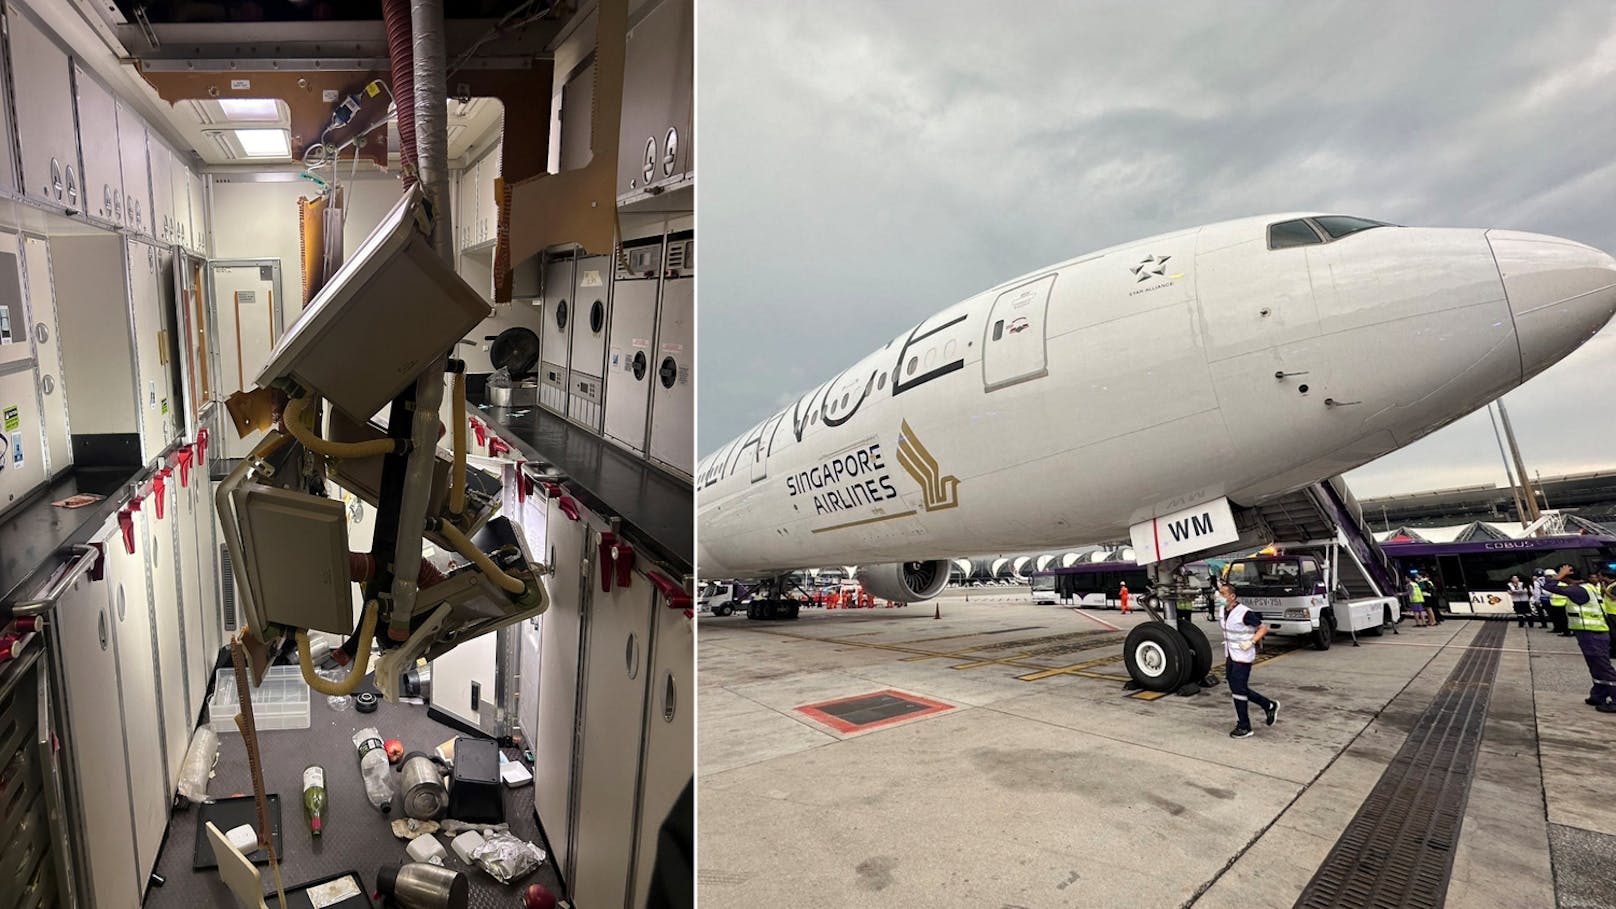 Passagier auf Horror-Flug: "Das Flugzeug fiel einfach"